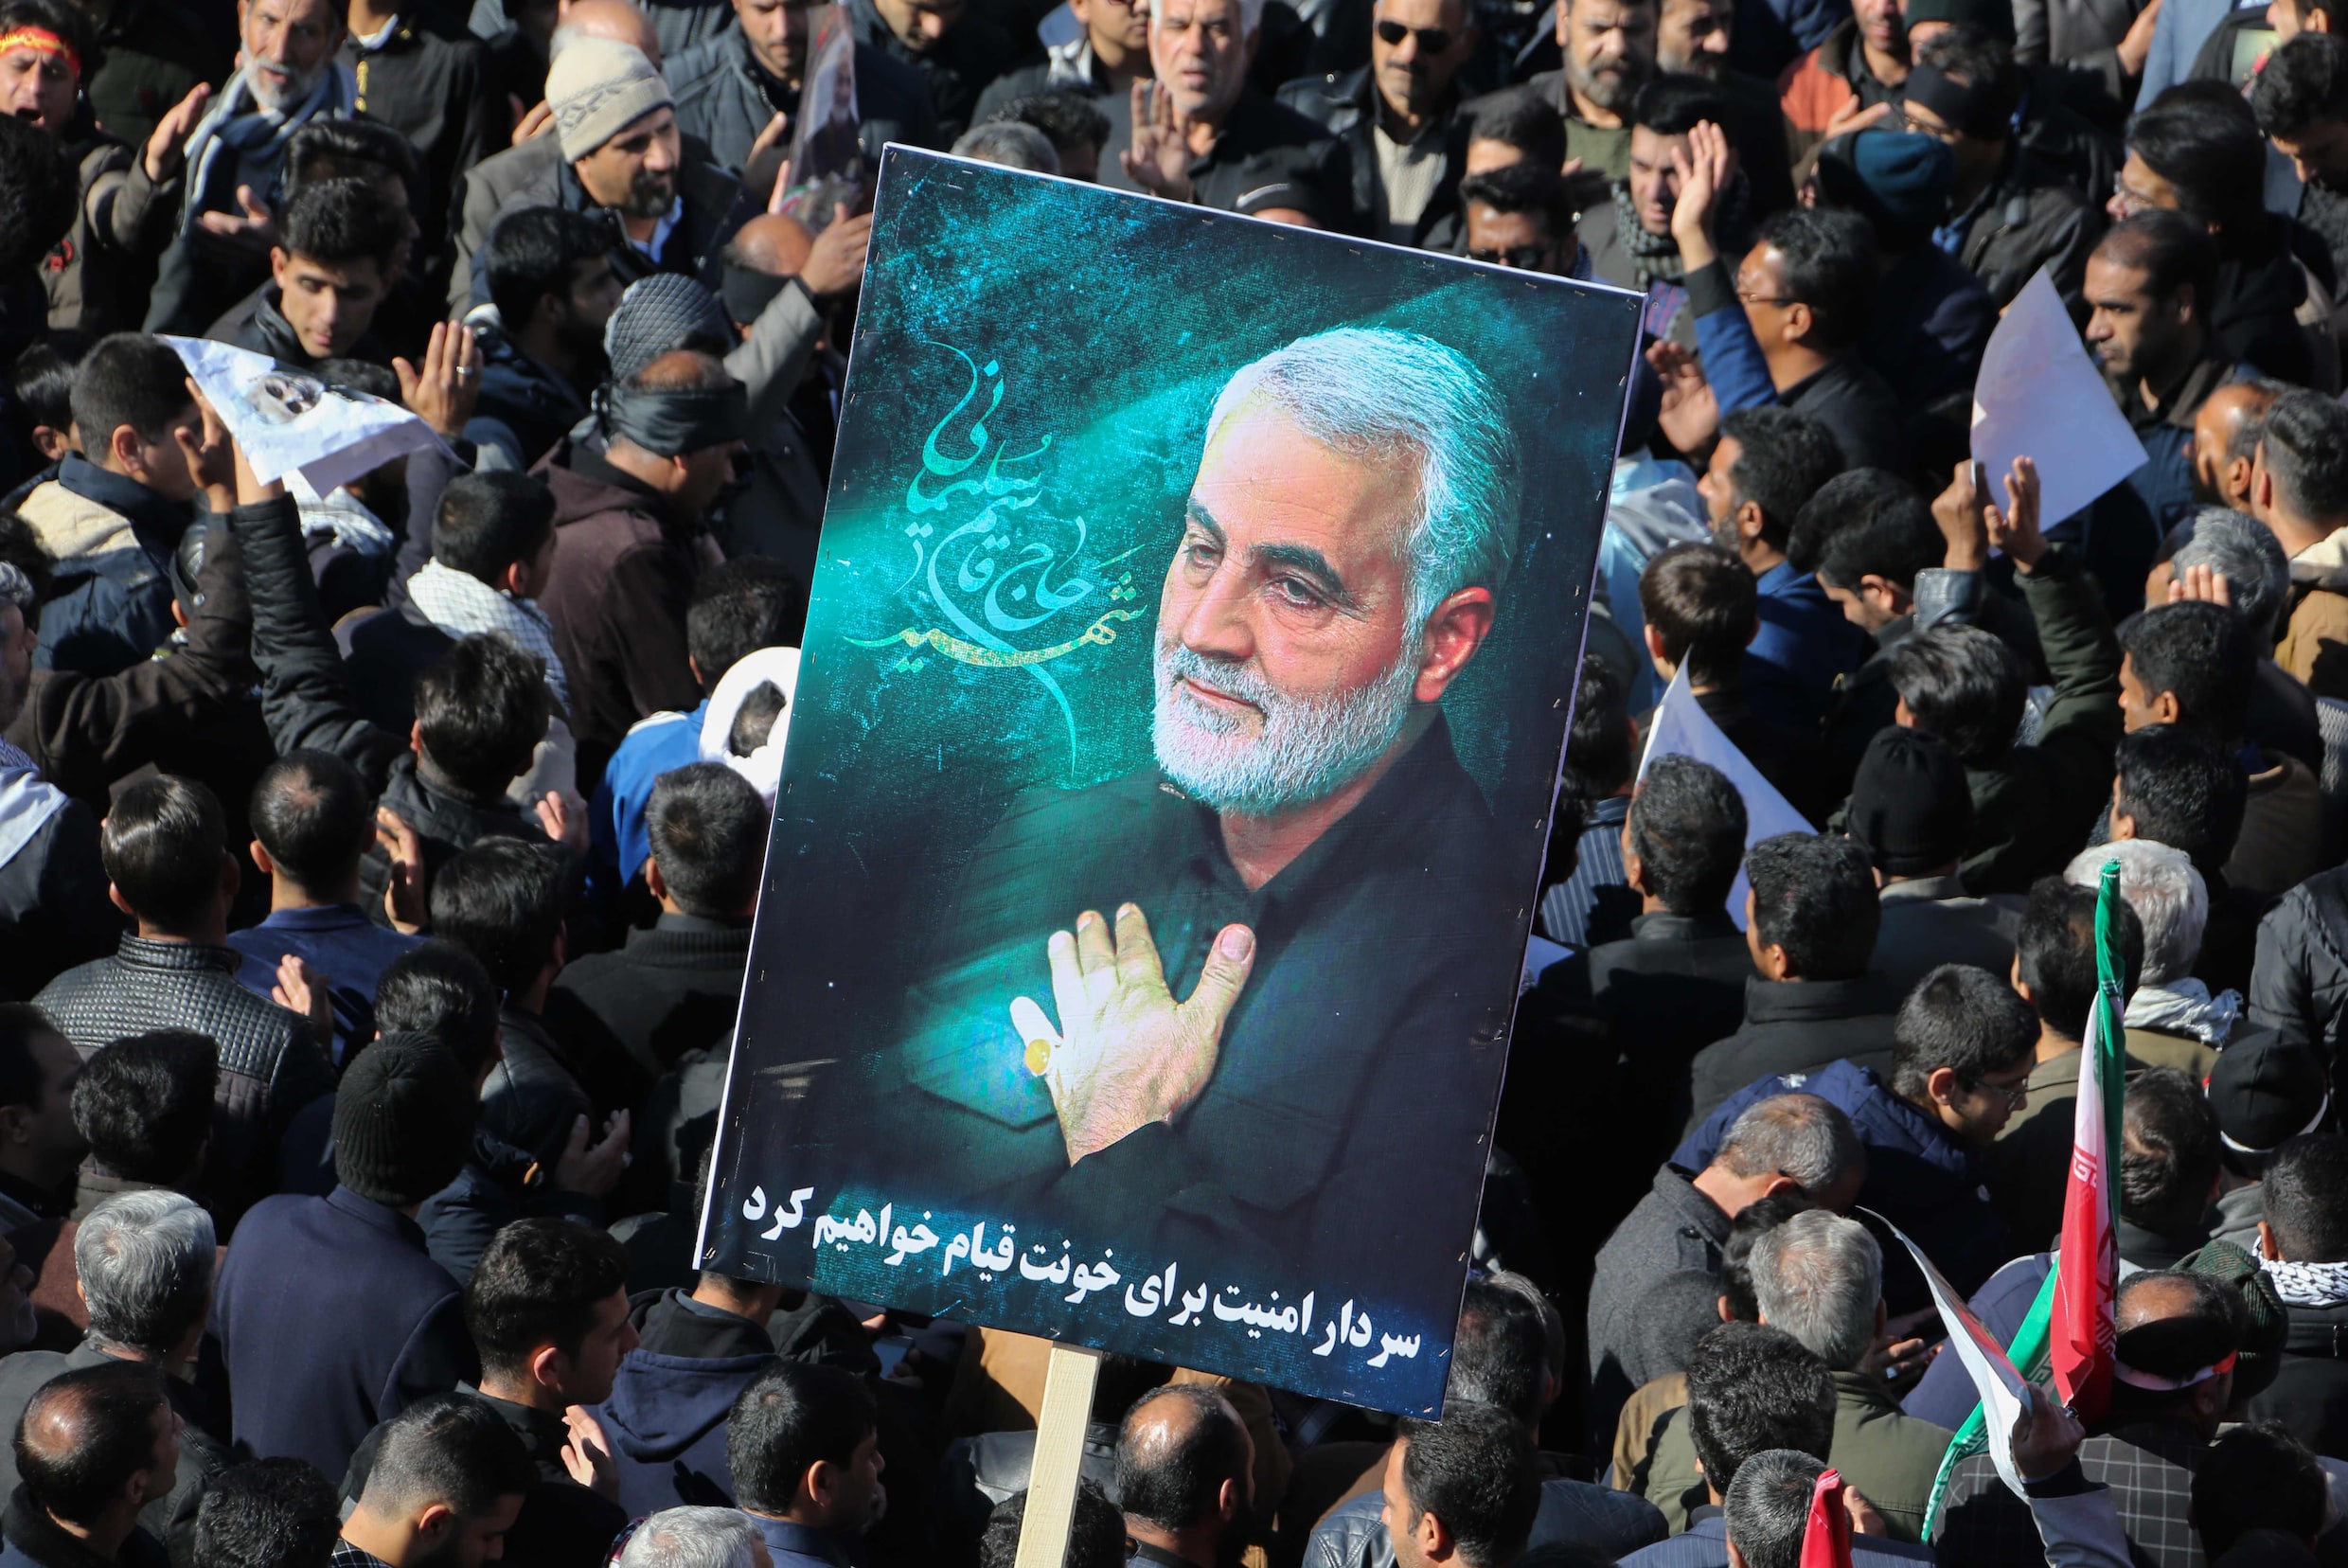 ▶︎ Minstens 50 doden bij tumult tijdens ceremonie voor Iraanse generaal Soleimani, begrafenis uitgesteld